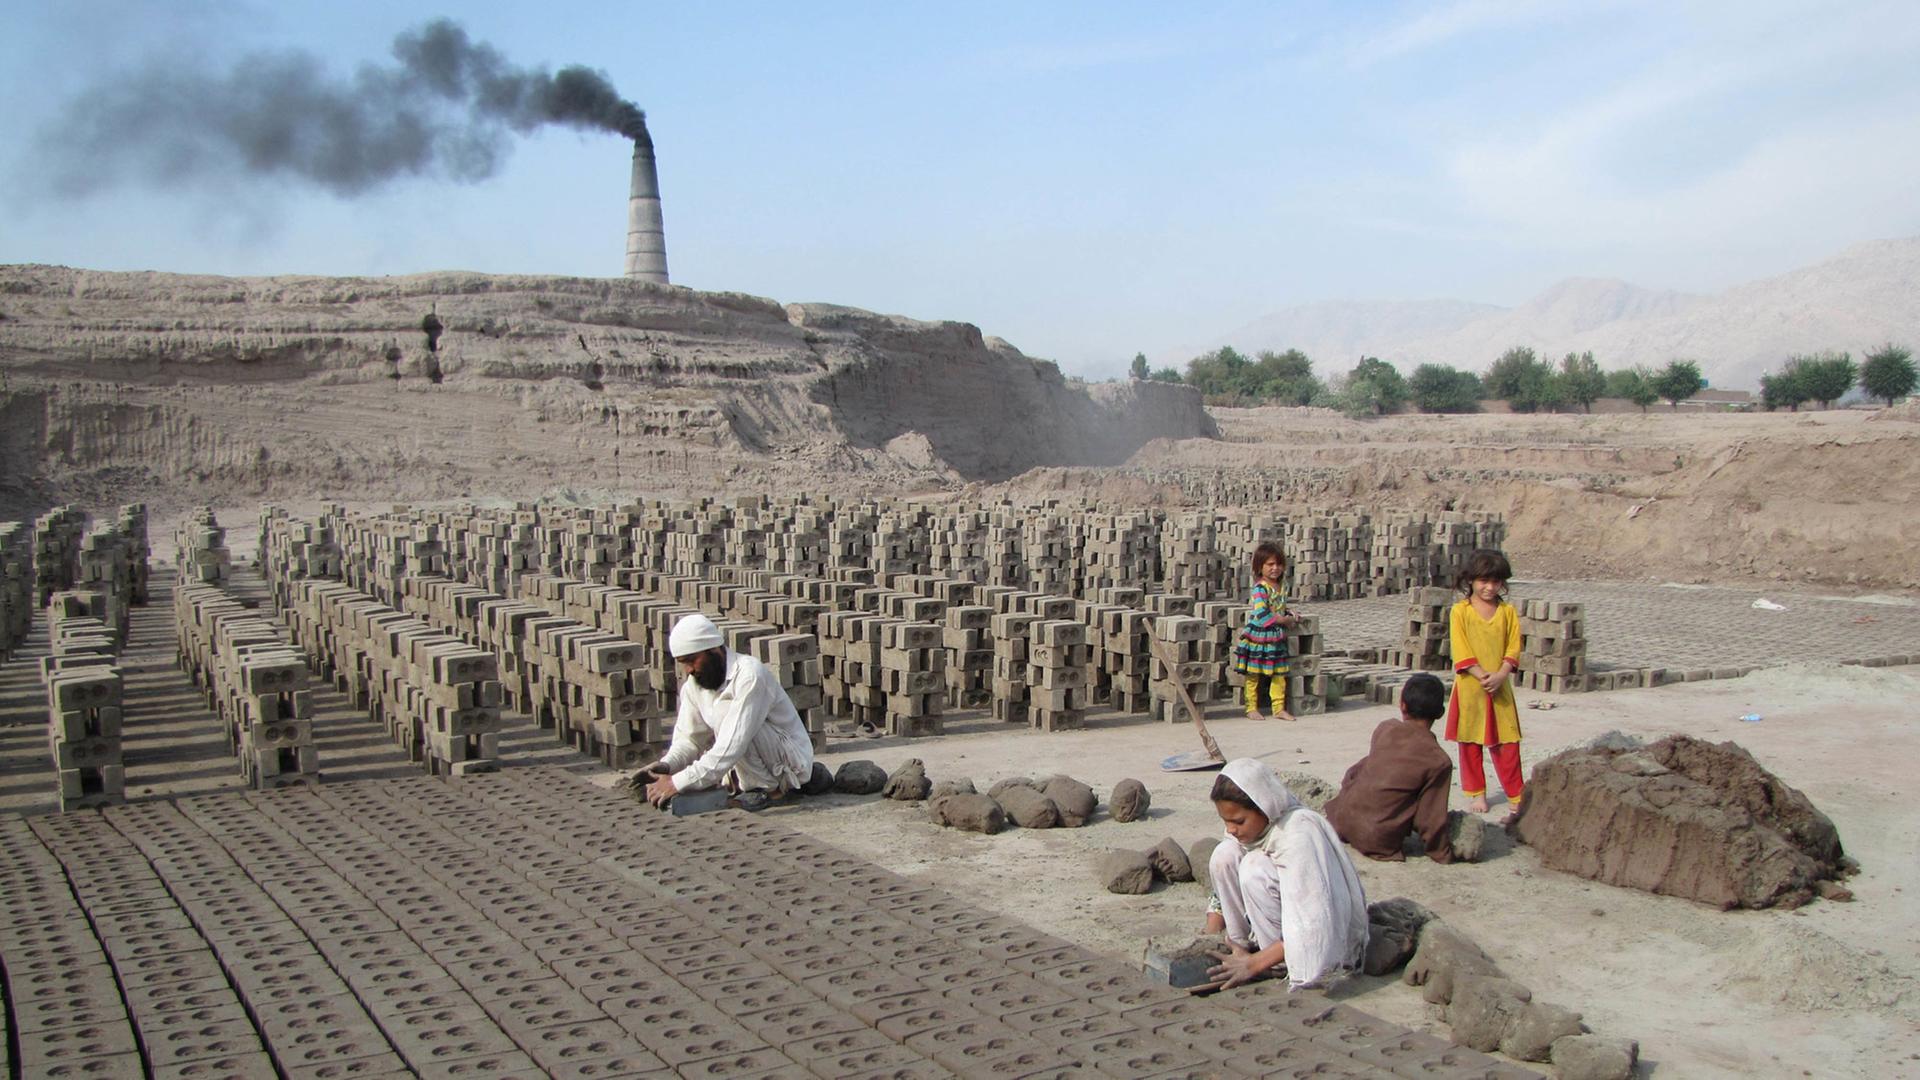 Erwachsene und Kinder arbeiten in einer Ziegelfabrik im Oktober 2014 in der afghanischen Provinz Nangarhar.